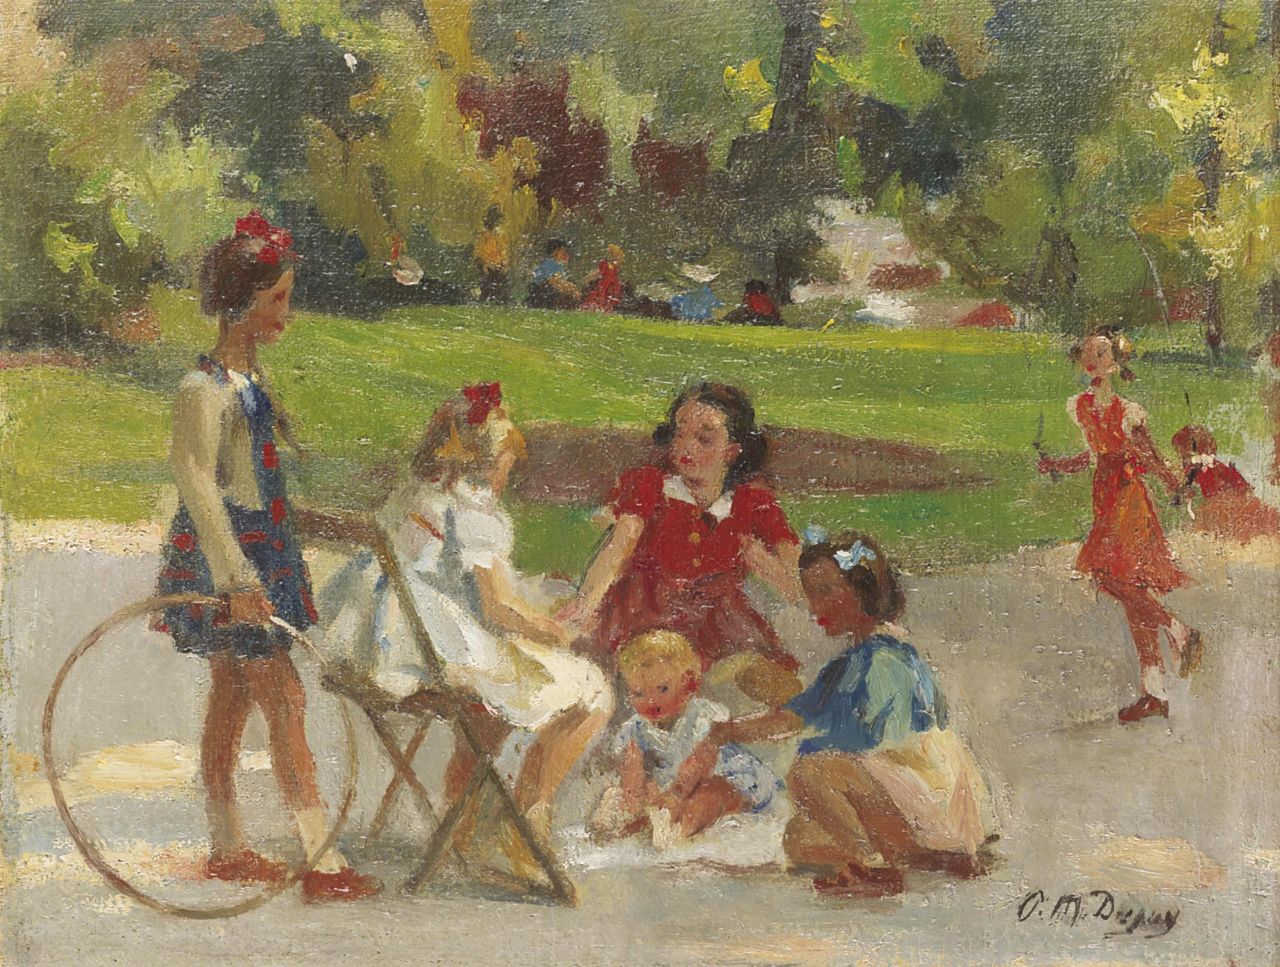 Dupuy P.M.  | Paul Michel Dupuy, Spelende meisjes in het Parc Monceau, Parijs, olieverf op doek 28,6 x 37,2 cm, gesigneerd rechtsonder